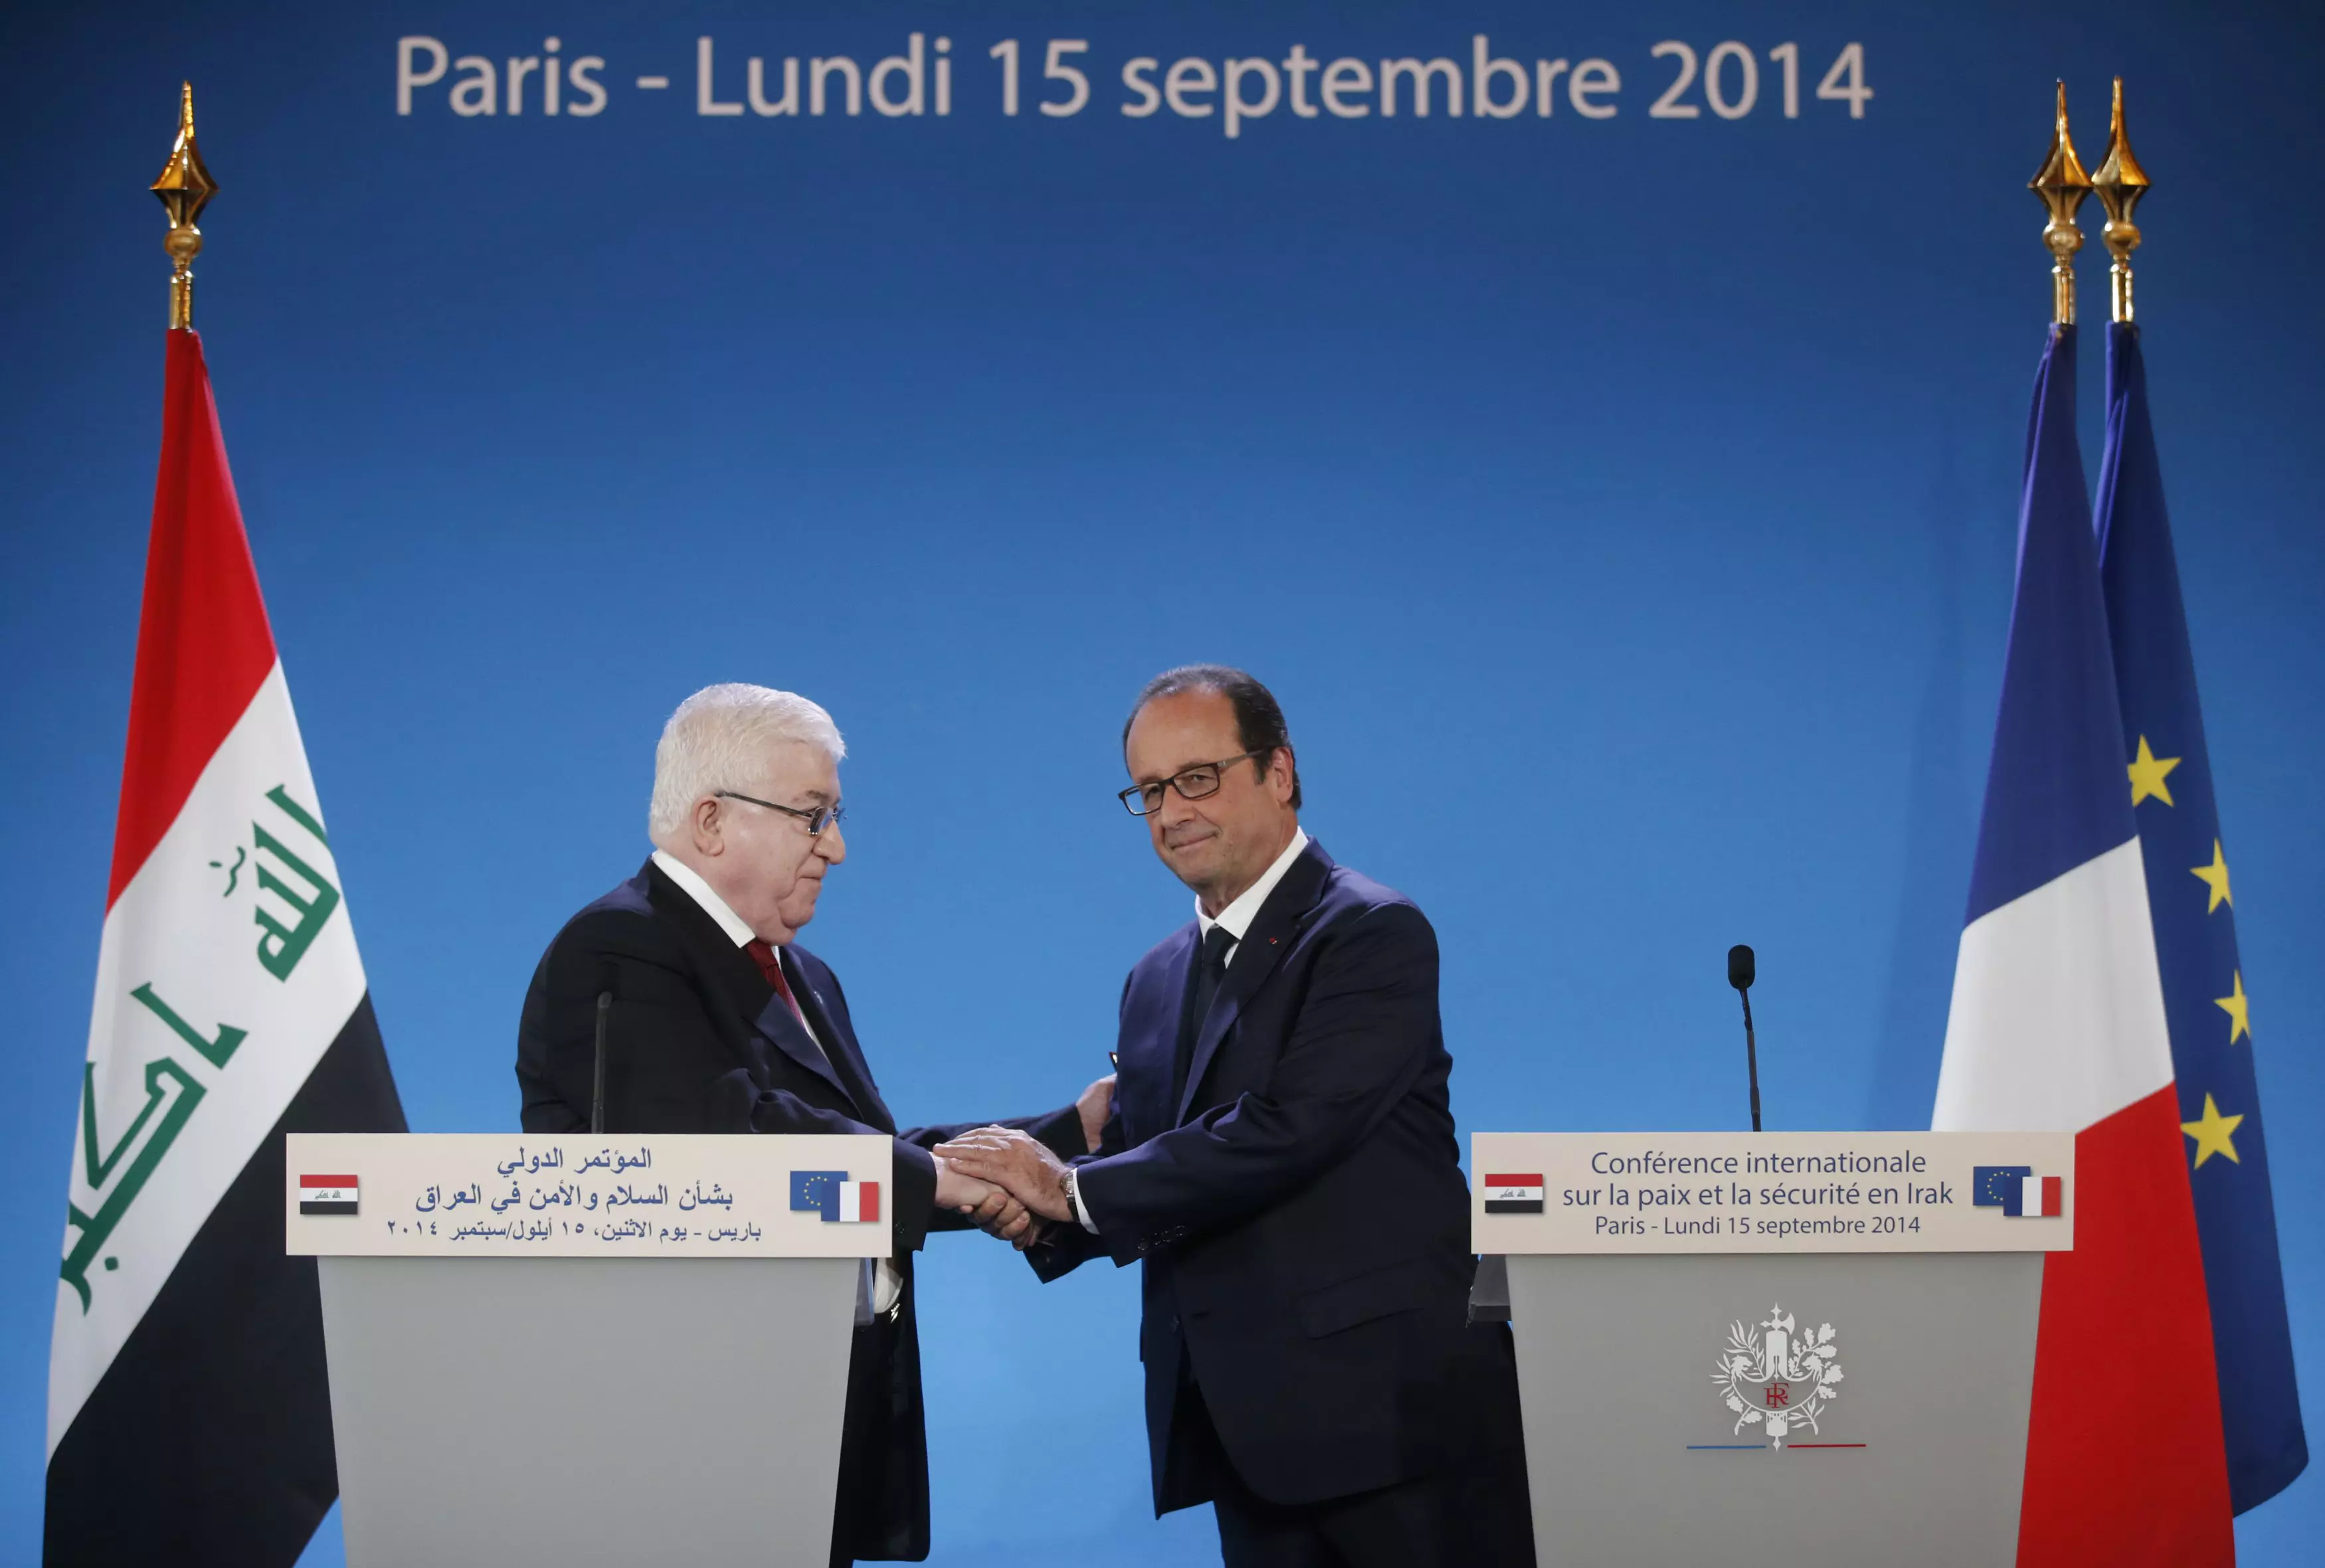 40 מדינות הצטרפו למאמצים הבינלאומיים נגד דאעש בעיראק. נשיא צרפת פרנסואה הולנד עם מקבילו העיראקי פואד מעסום